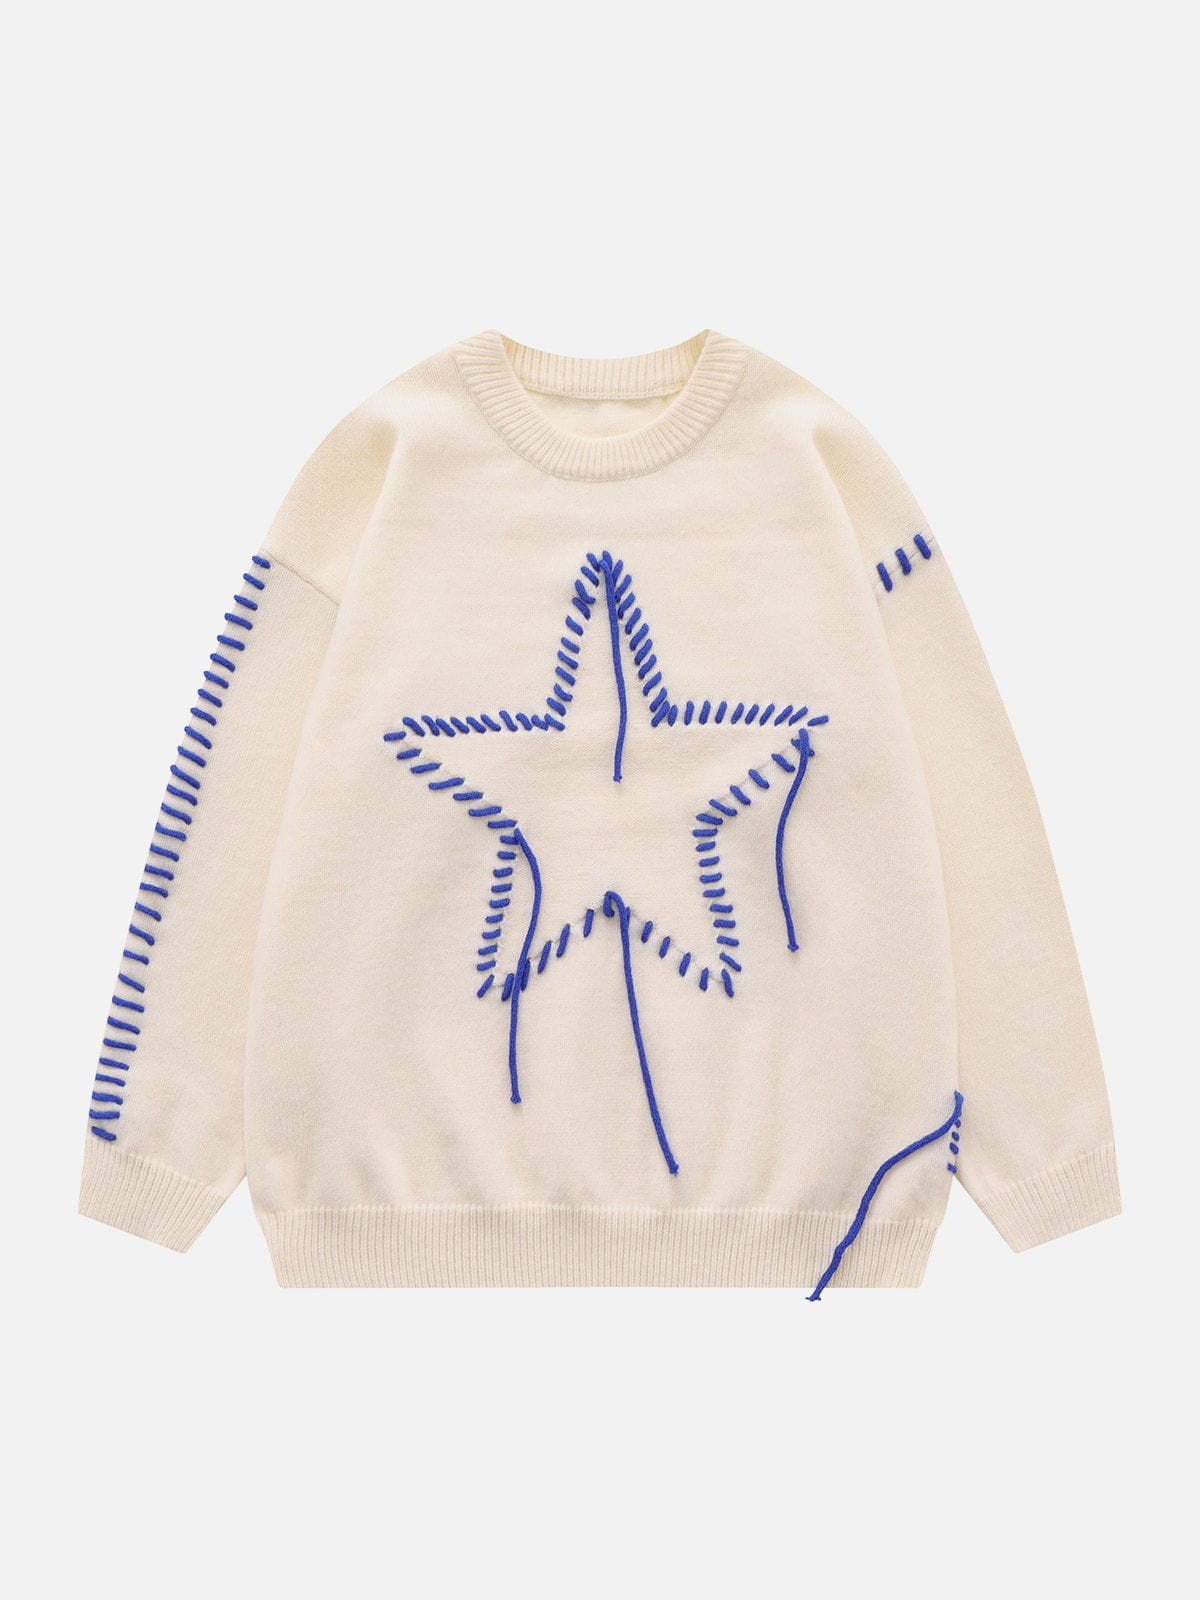 Aelfric Eden Star Crochet Sweater – Aelfric eden